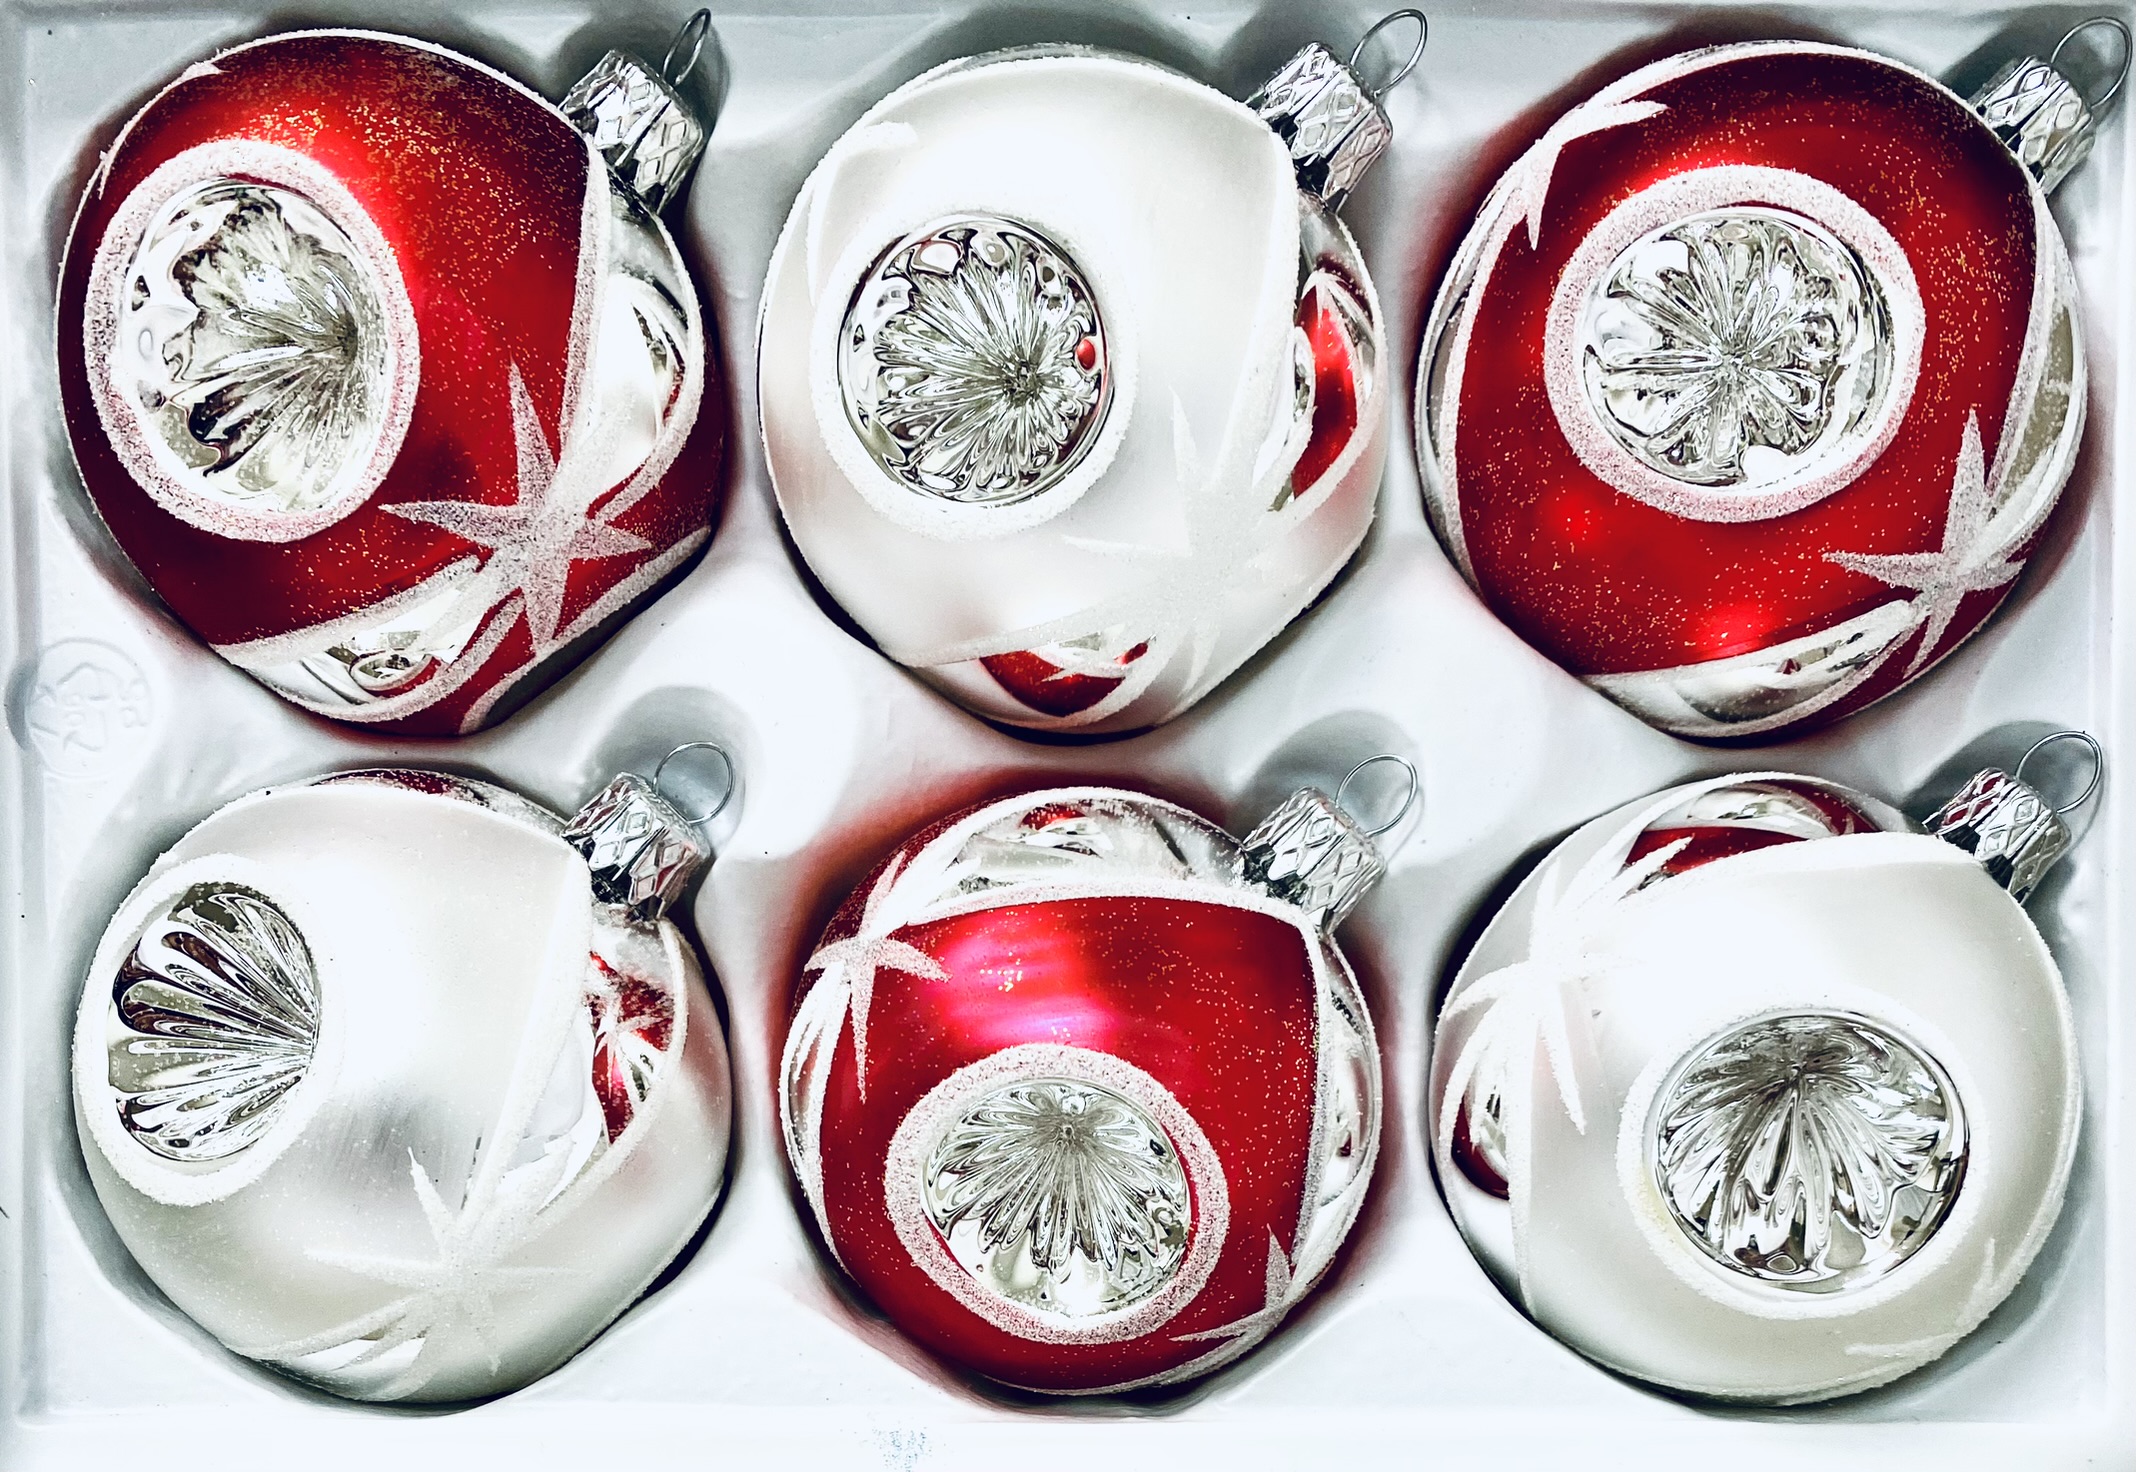 Vánoční ozdoba pro zářivé svátky - bílá a červená, 6 ks, velikost 7 cm, s reflektorem Balení: 1 balení, Barva: červená;bílá, Velikost: 7 cm